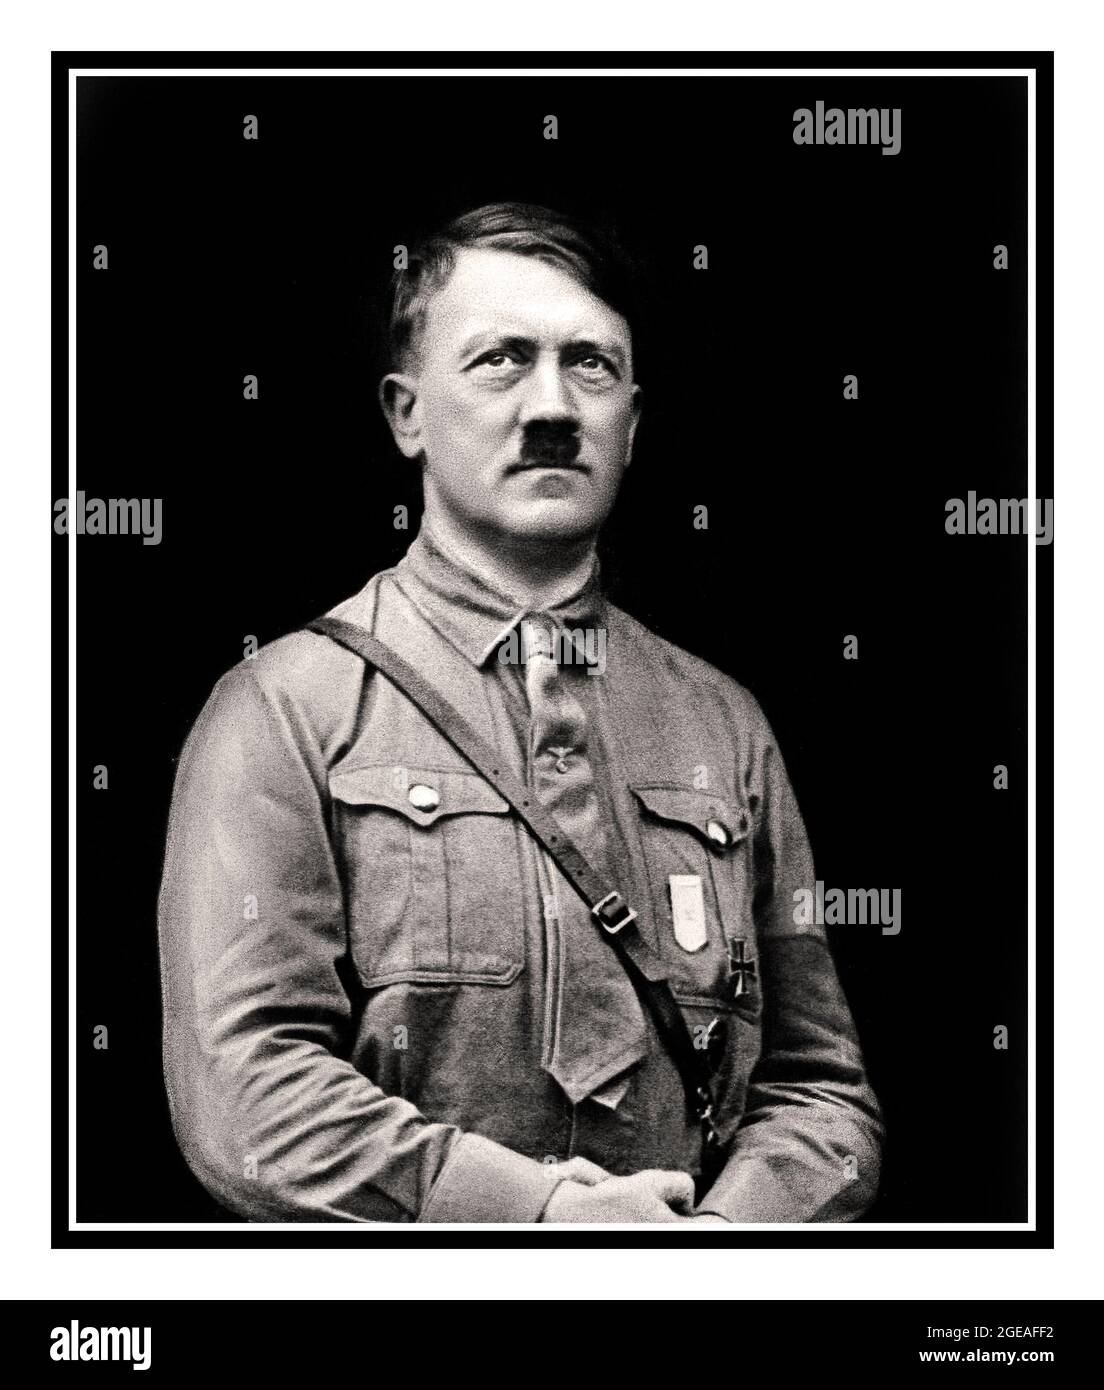 Adolf Hitler dans l'uniforme militaire NSDAP 1932 Allemagne nazie Banque D'Images